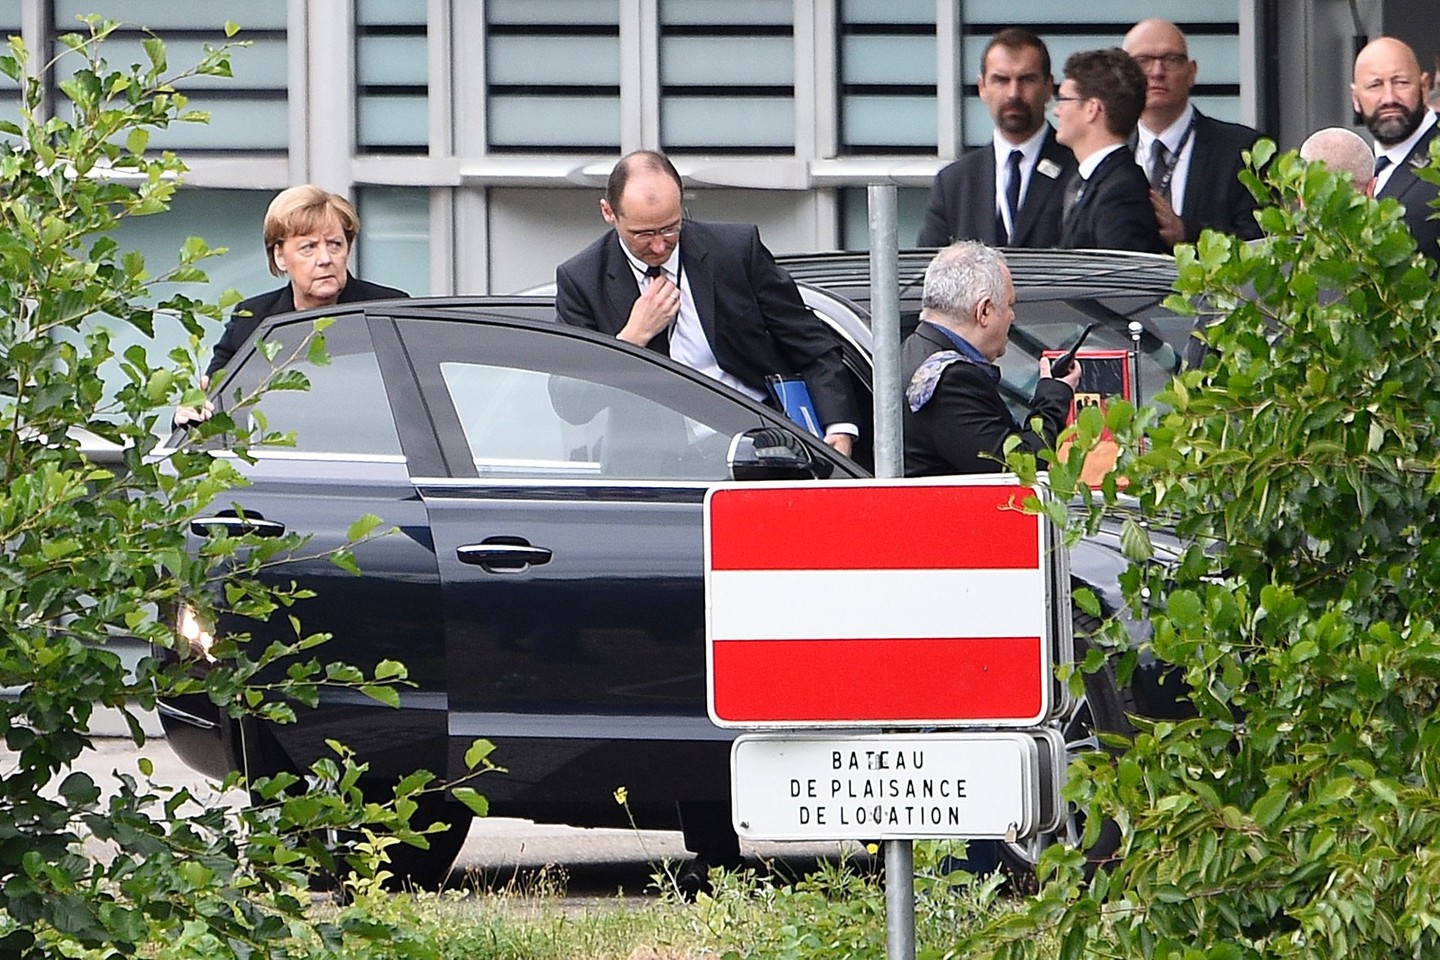  Atsisveikinime dalyvavo nemažai politinių lyderių. <br> AFP/„Scanpix“ nuotr. 